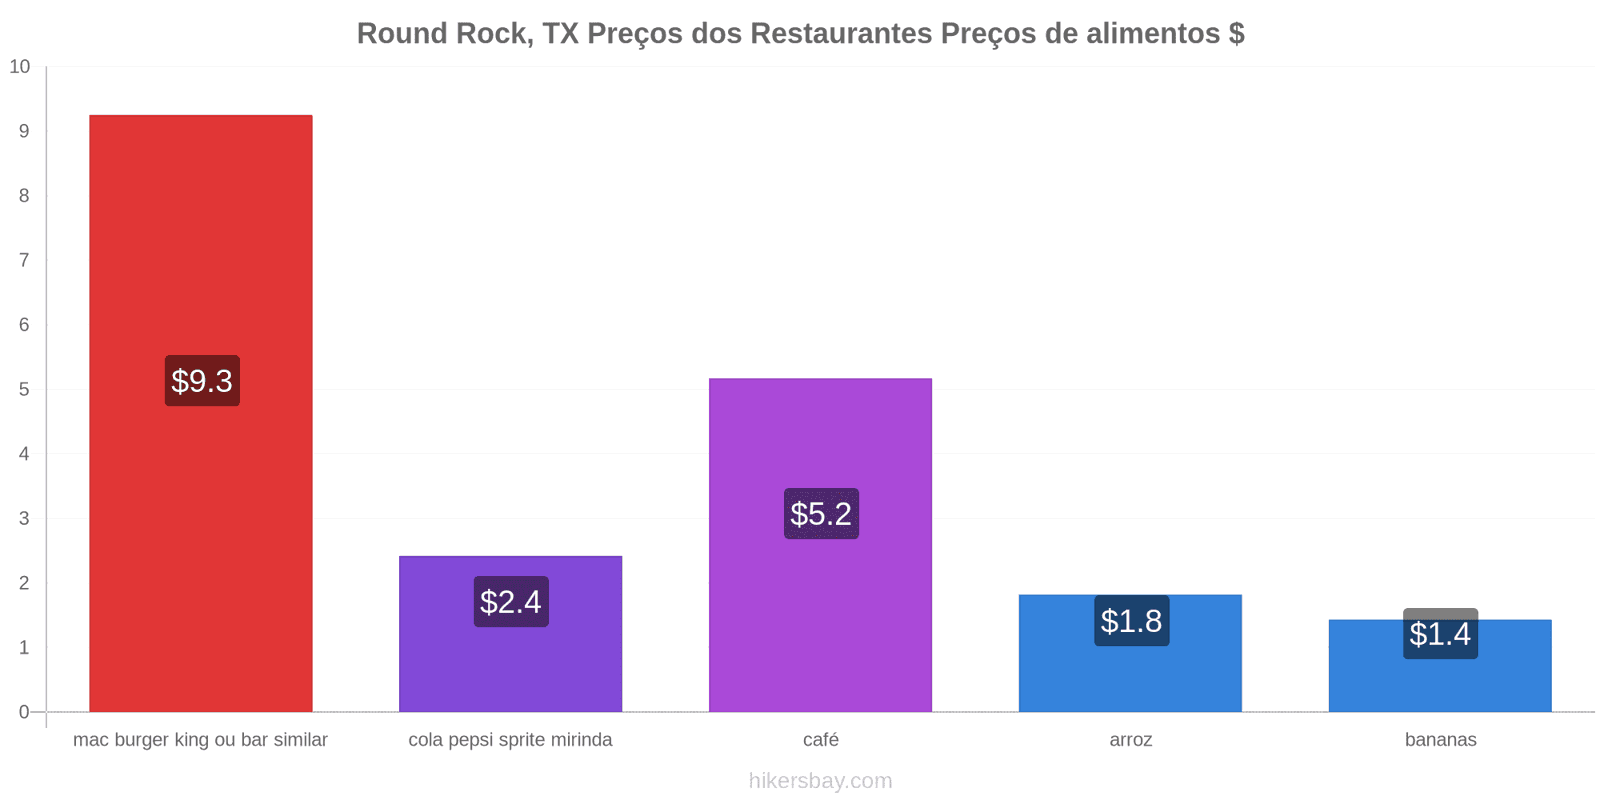 Round Rock, TX mudanças de preços hikersbay.com